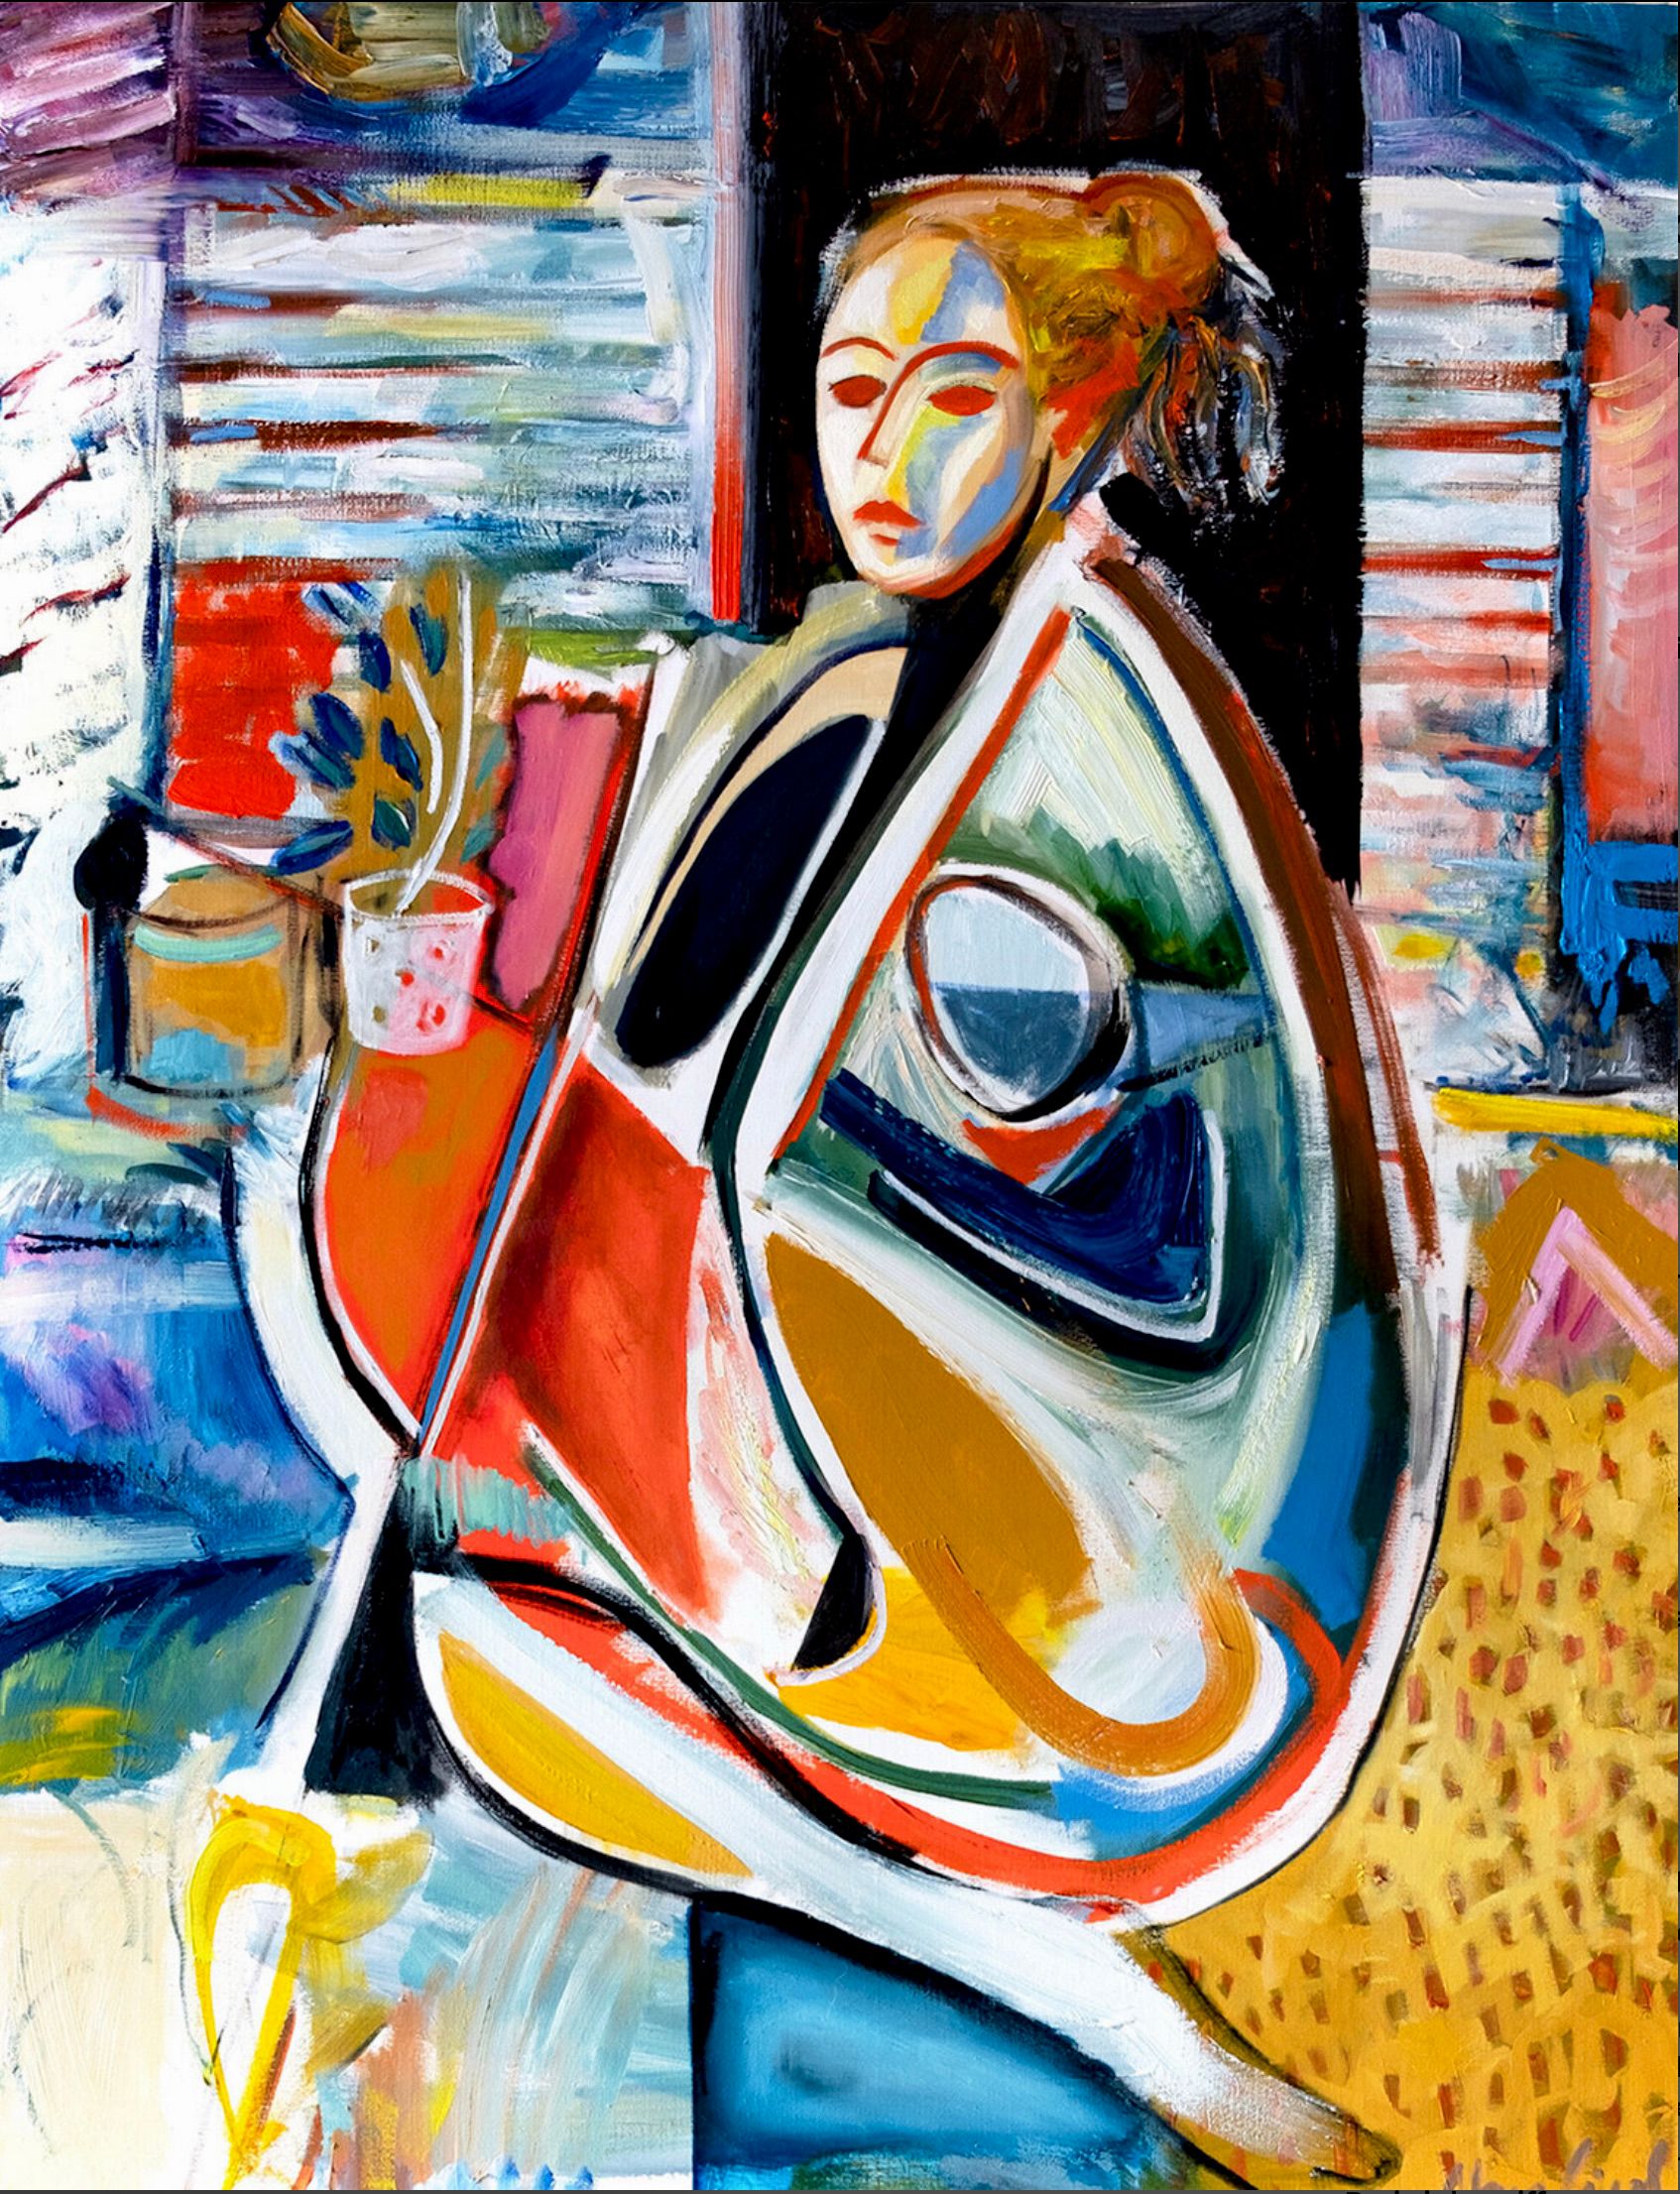 MECESLA Maciej Cieśla, "Woman in abstract forms, girl in studio", Peinture abstraite d'une jeune fille sur fond d'objets dans un atelier artistique. Un jeune modèle dans des formes géométriques et des combinaisons de couleurs agressives avec des accents rouges.